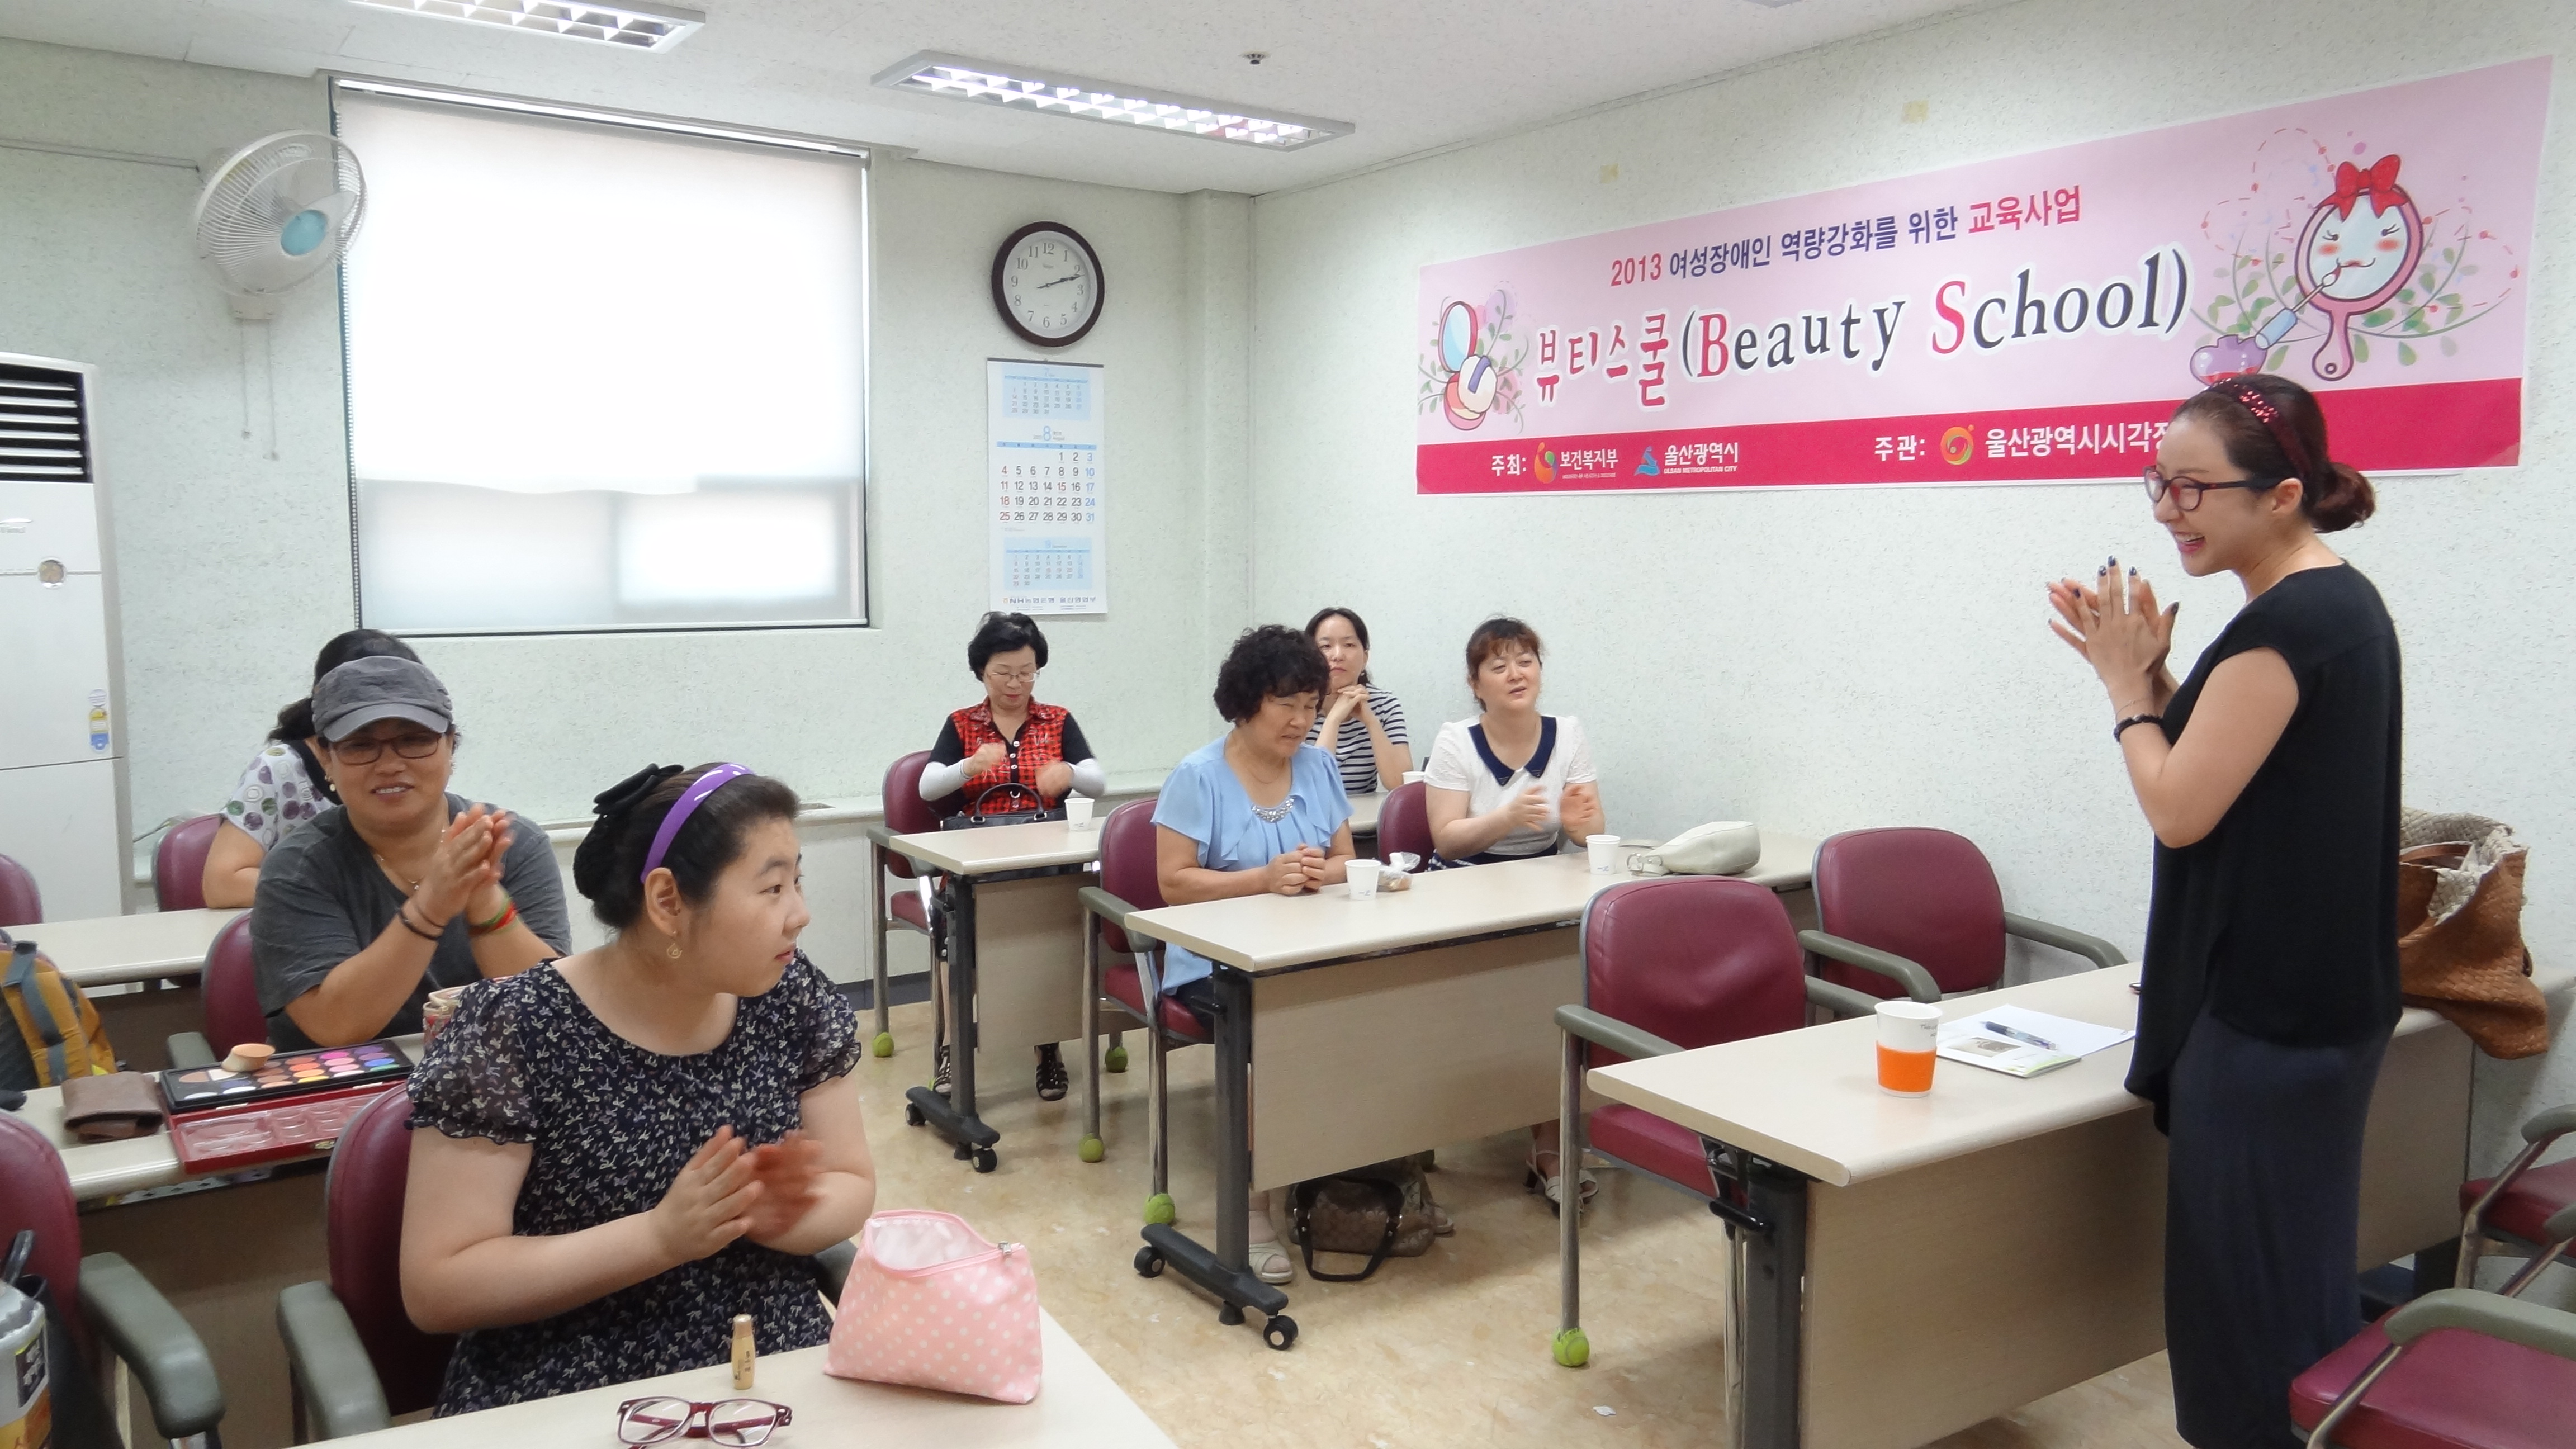 2013 여성장애인교육사업 ‘뷰티스쿨 개강’1